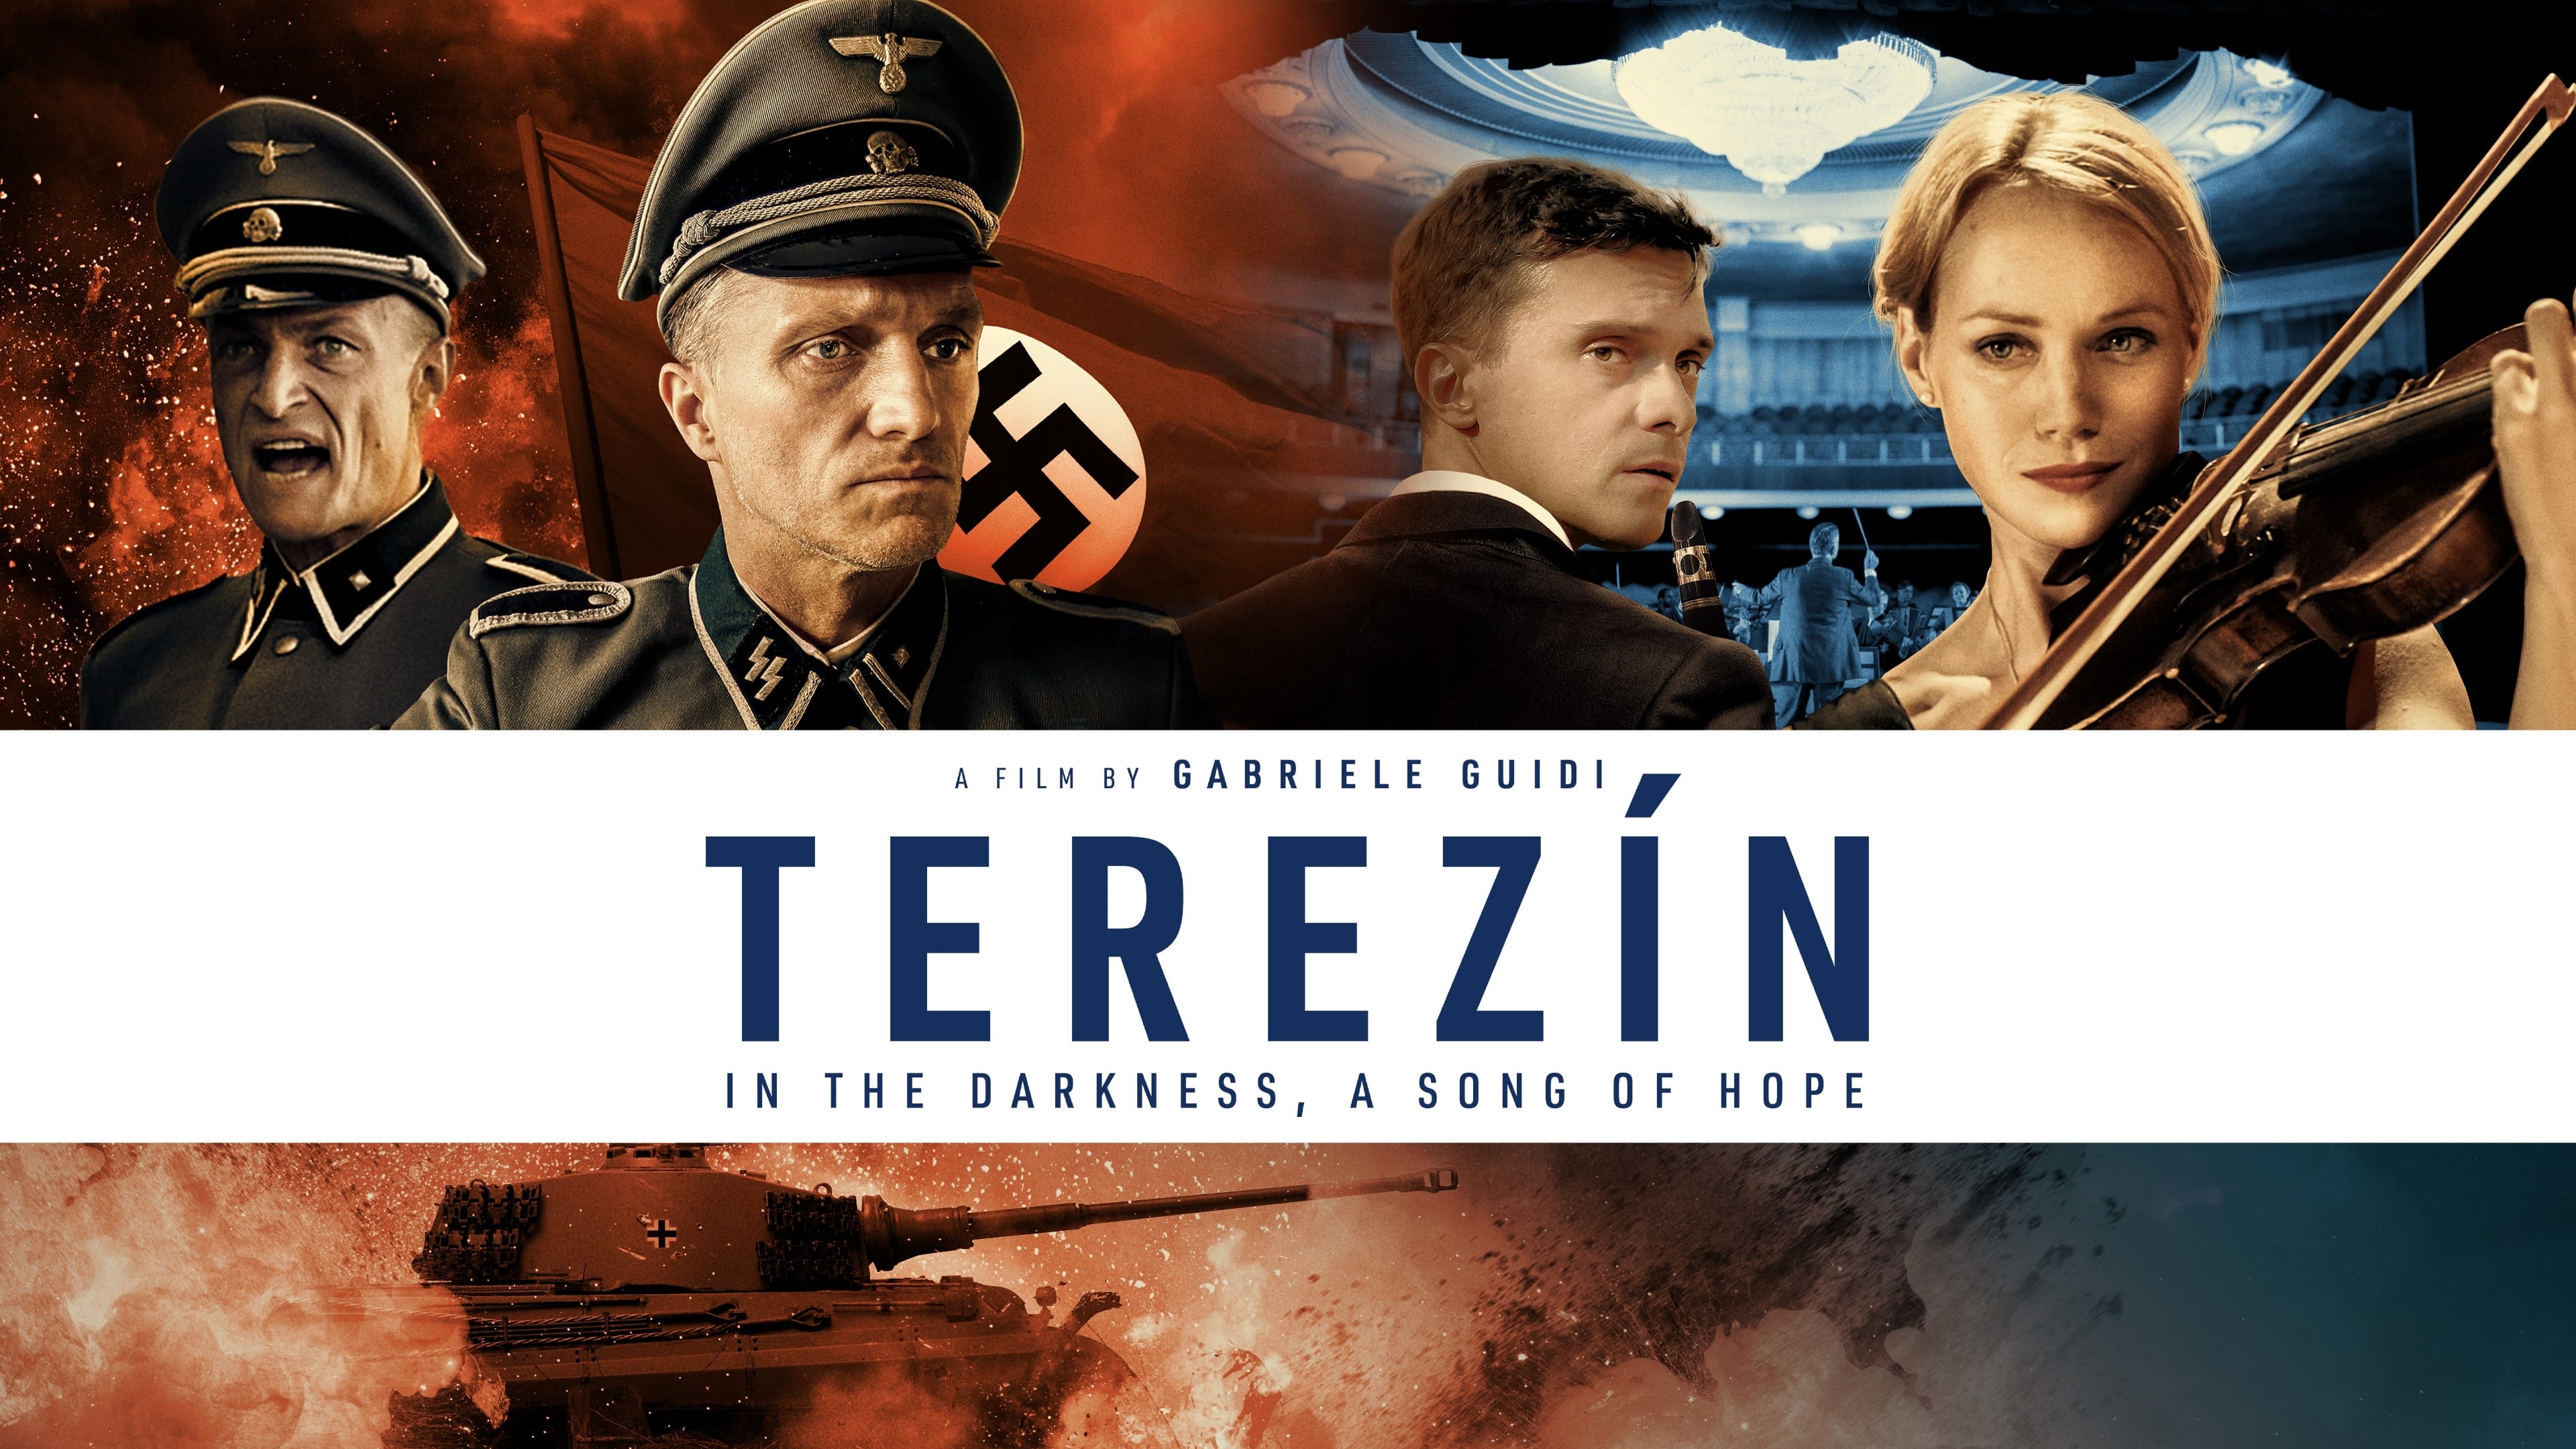 Le Terme di Terezín